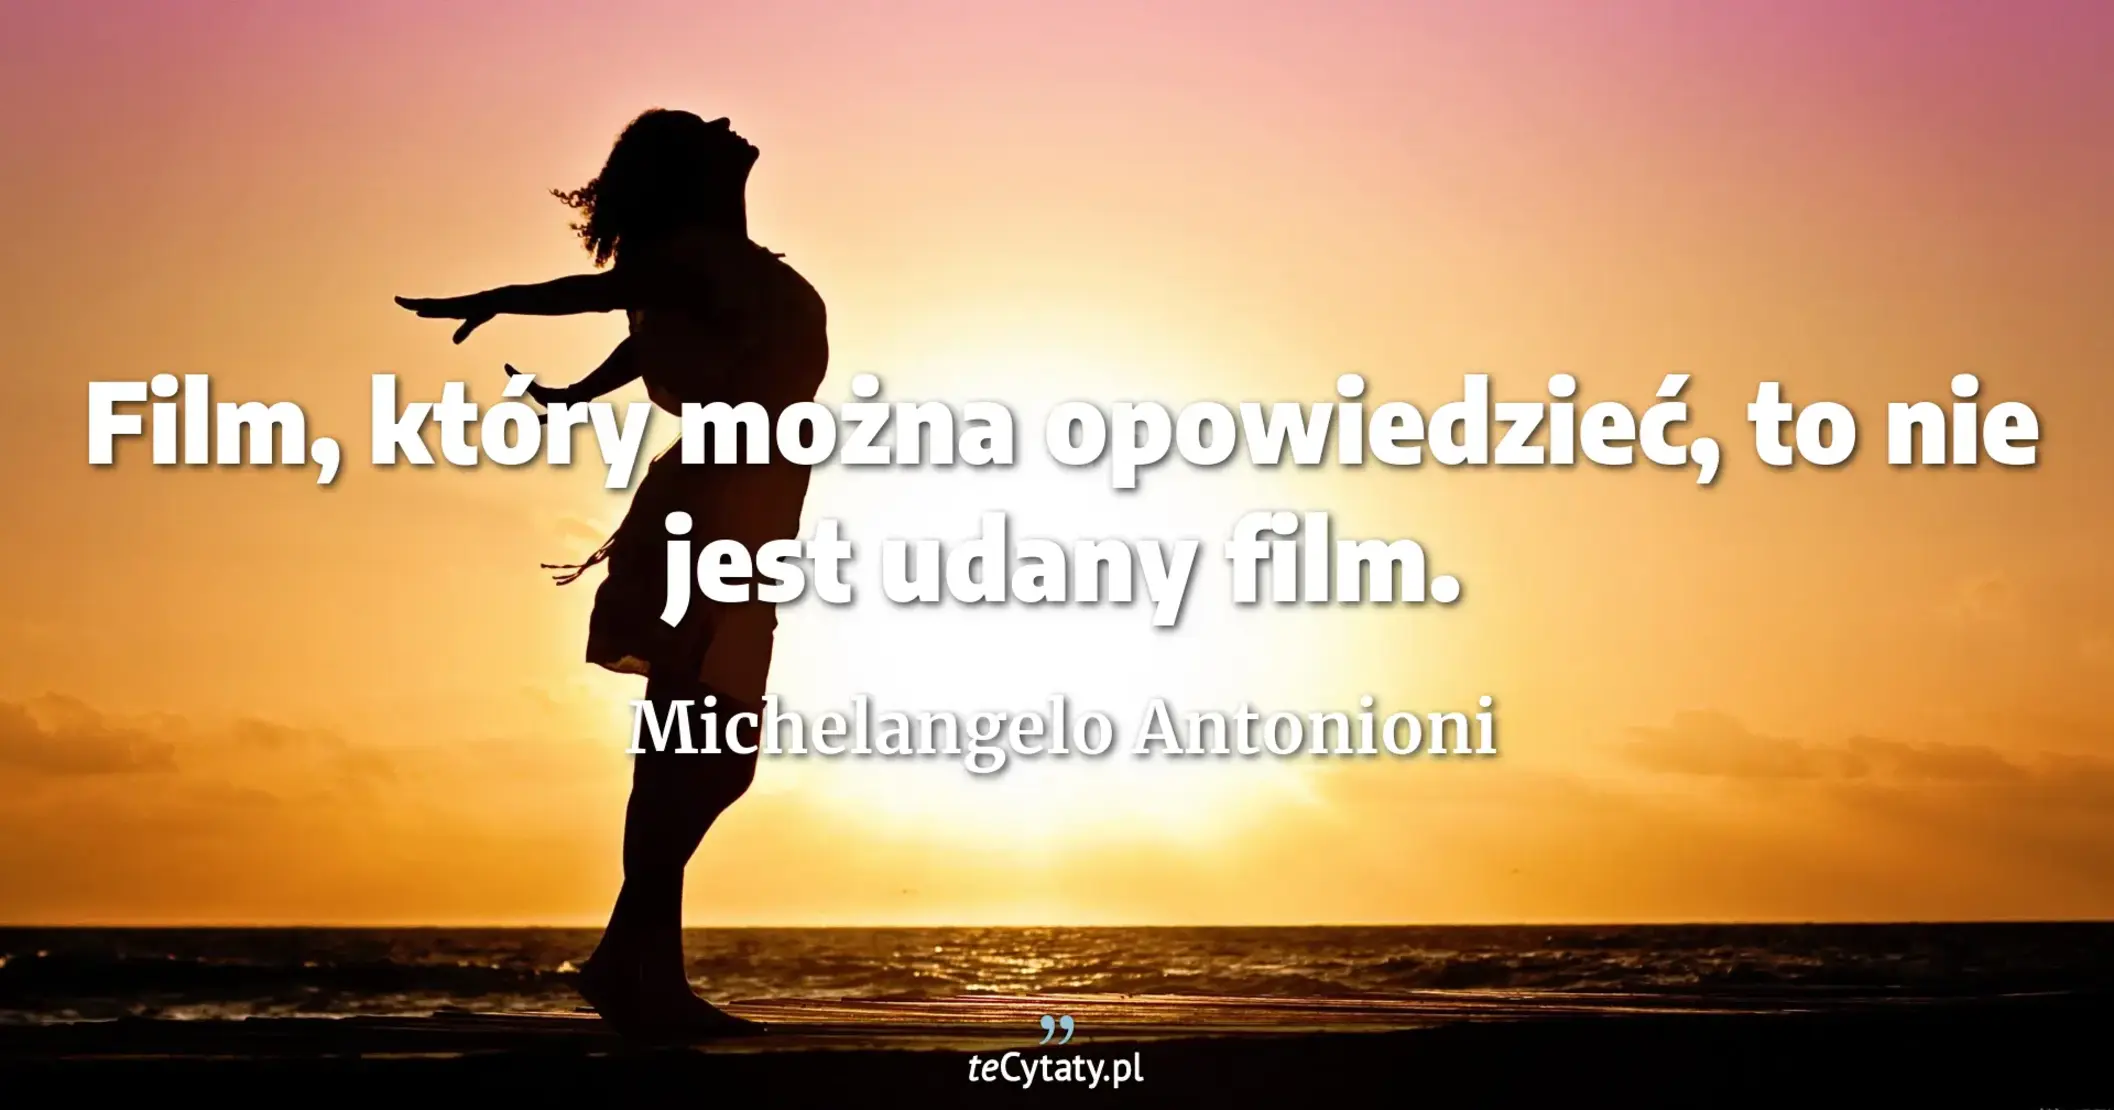 Film, który można opowiedzieć, to nie jest udany film. - Michelangelo Antonioni